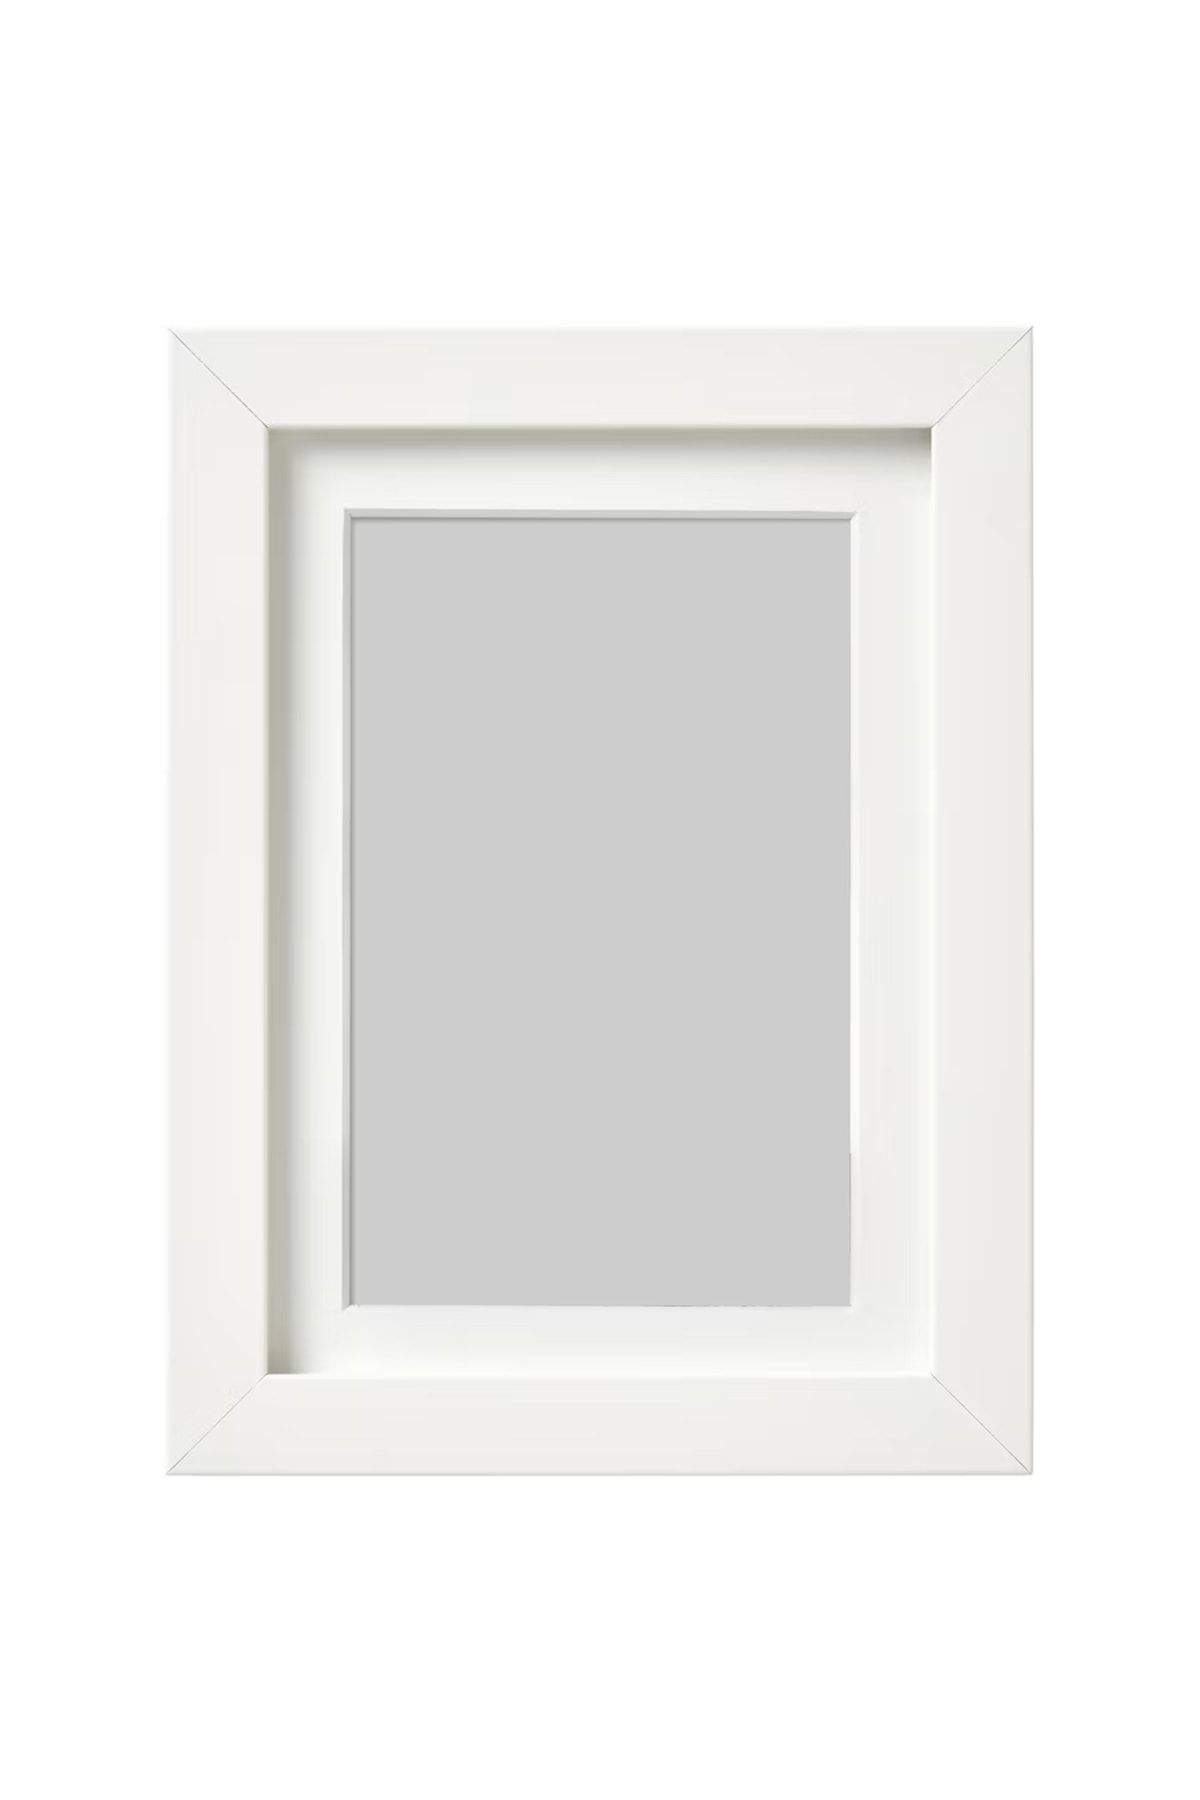 IKEA Rıbba 13x18 Cm Beyaz Ahşap Çerçeve Derin Kalın Kenarlı Beyaz 13x18 Cm Fotoğraf Resim Çerçevesi